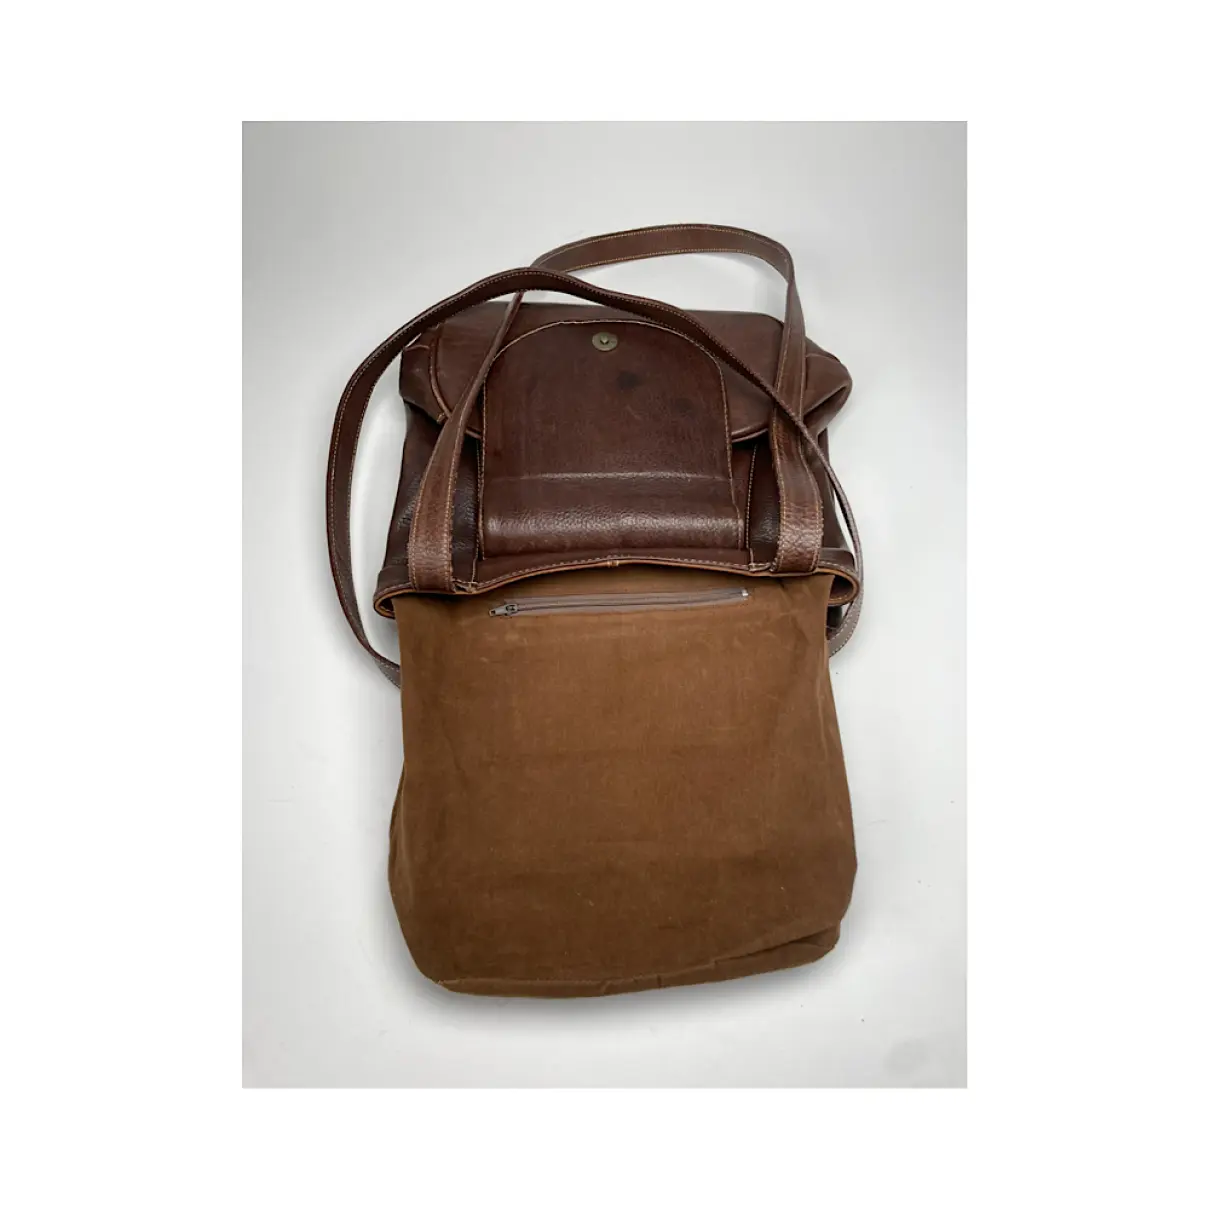 Luxury Jil Sander Handbags Women - Vintage